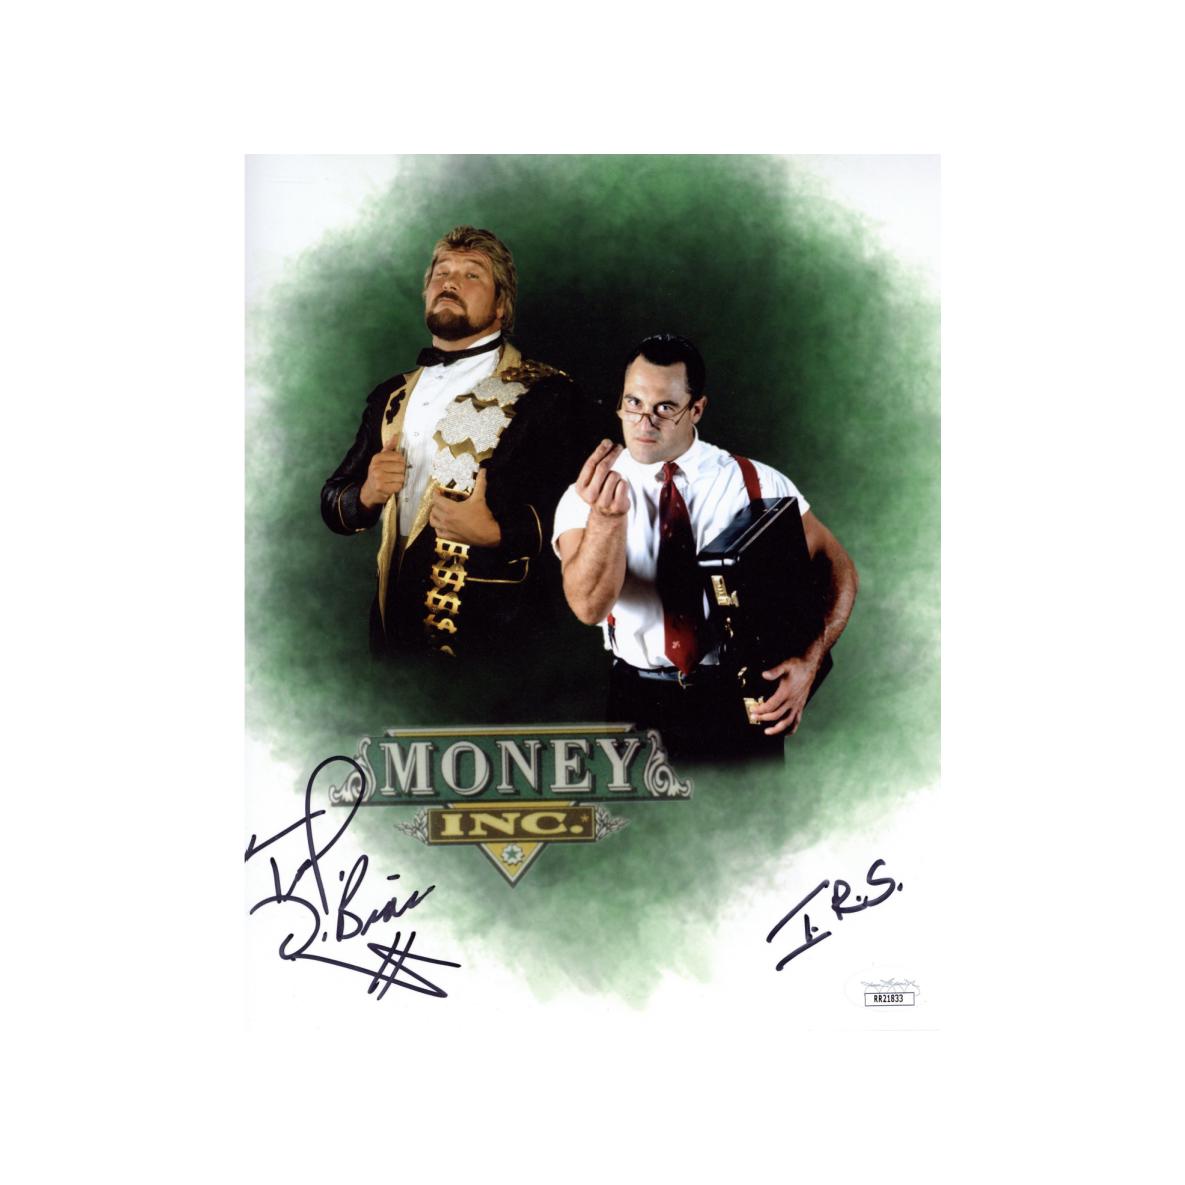 Million Dollar Man Ted Dibiase & IRS Man Signed 8x10 Photo Autographed WWE Wrestling Zobie COA